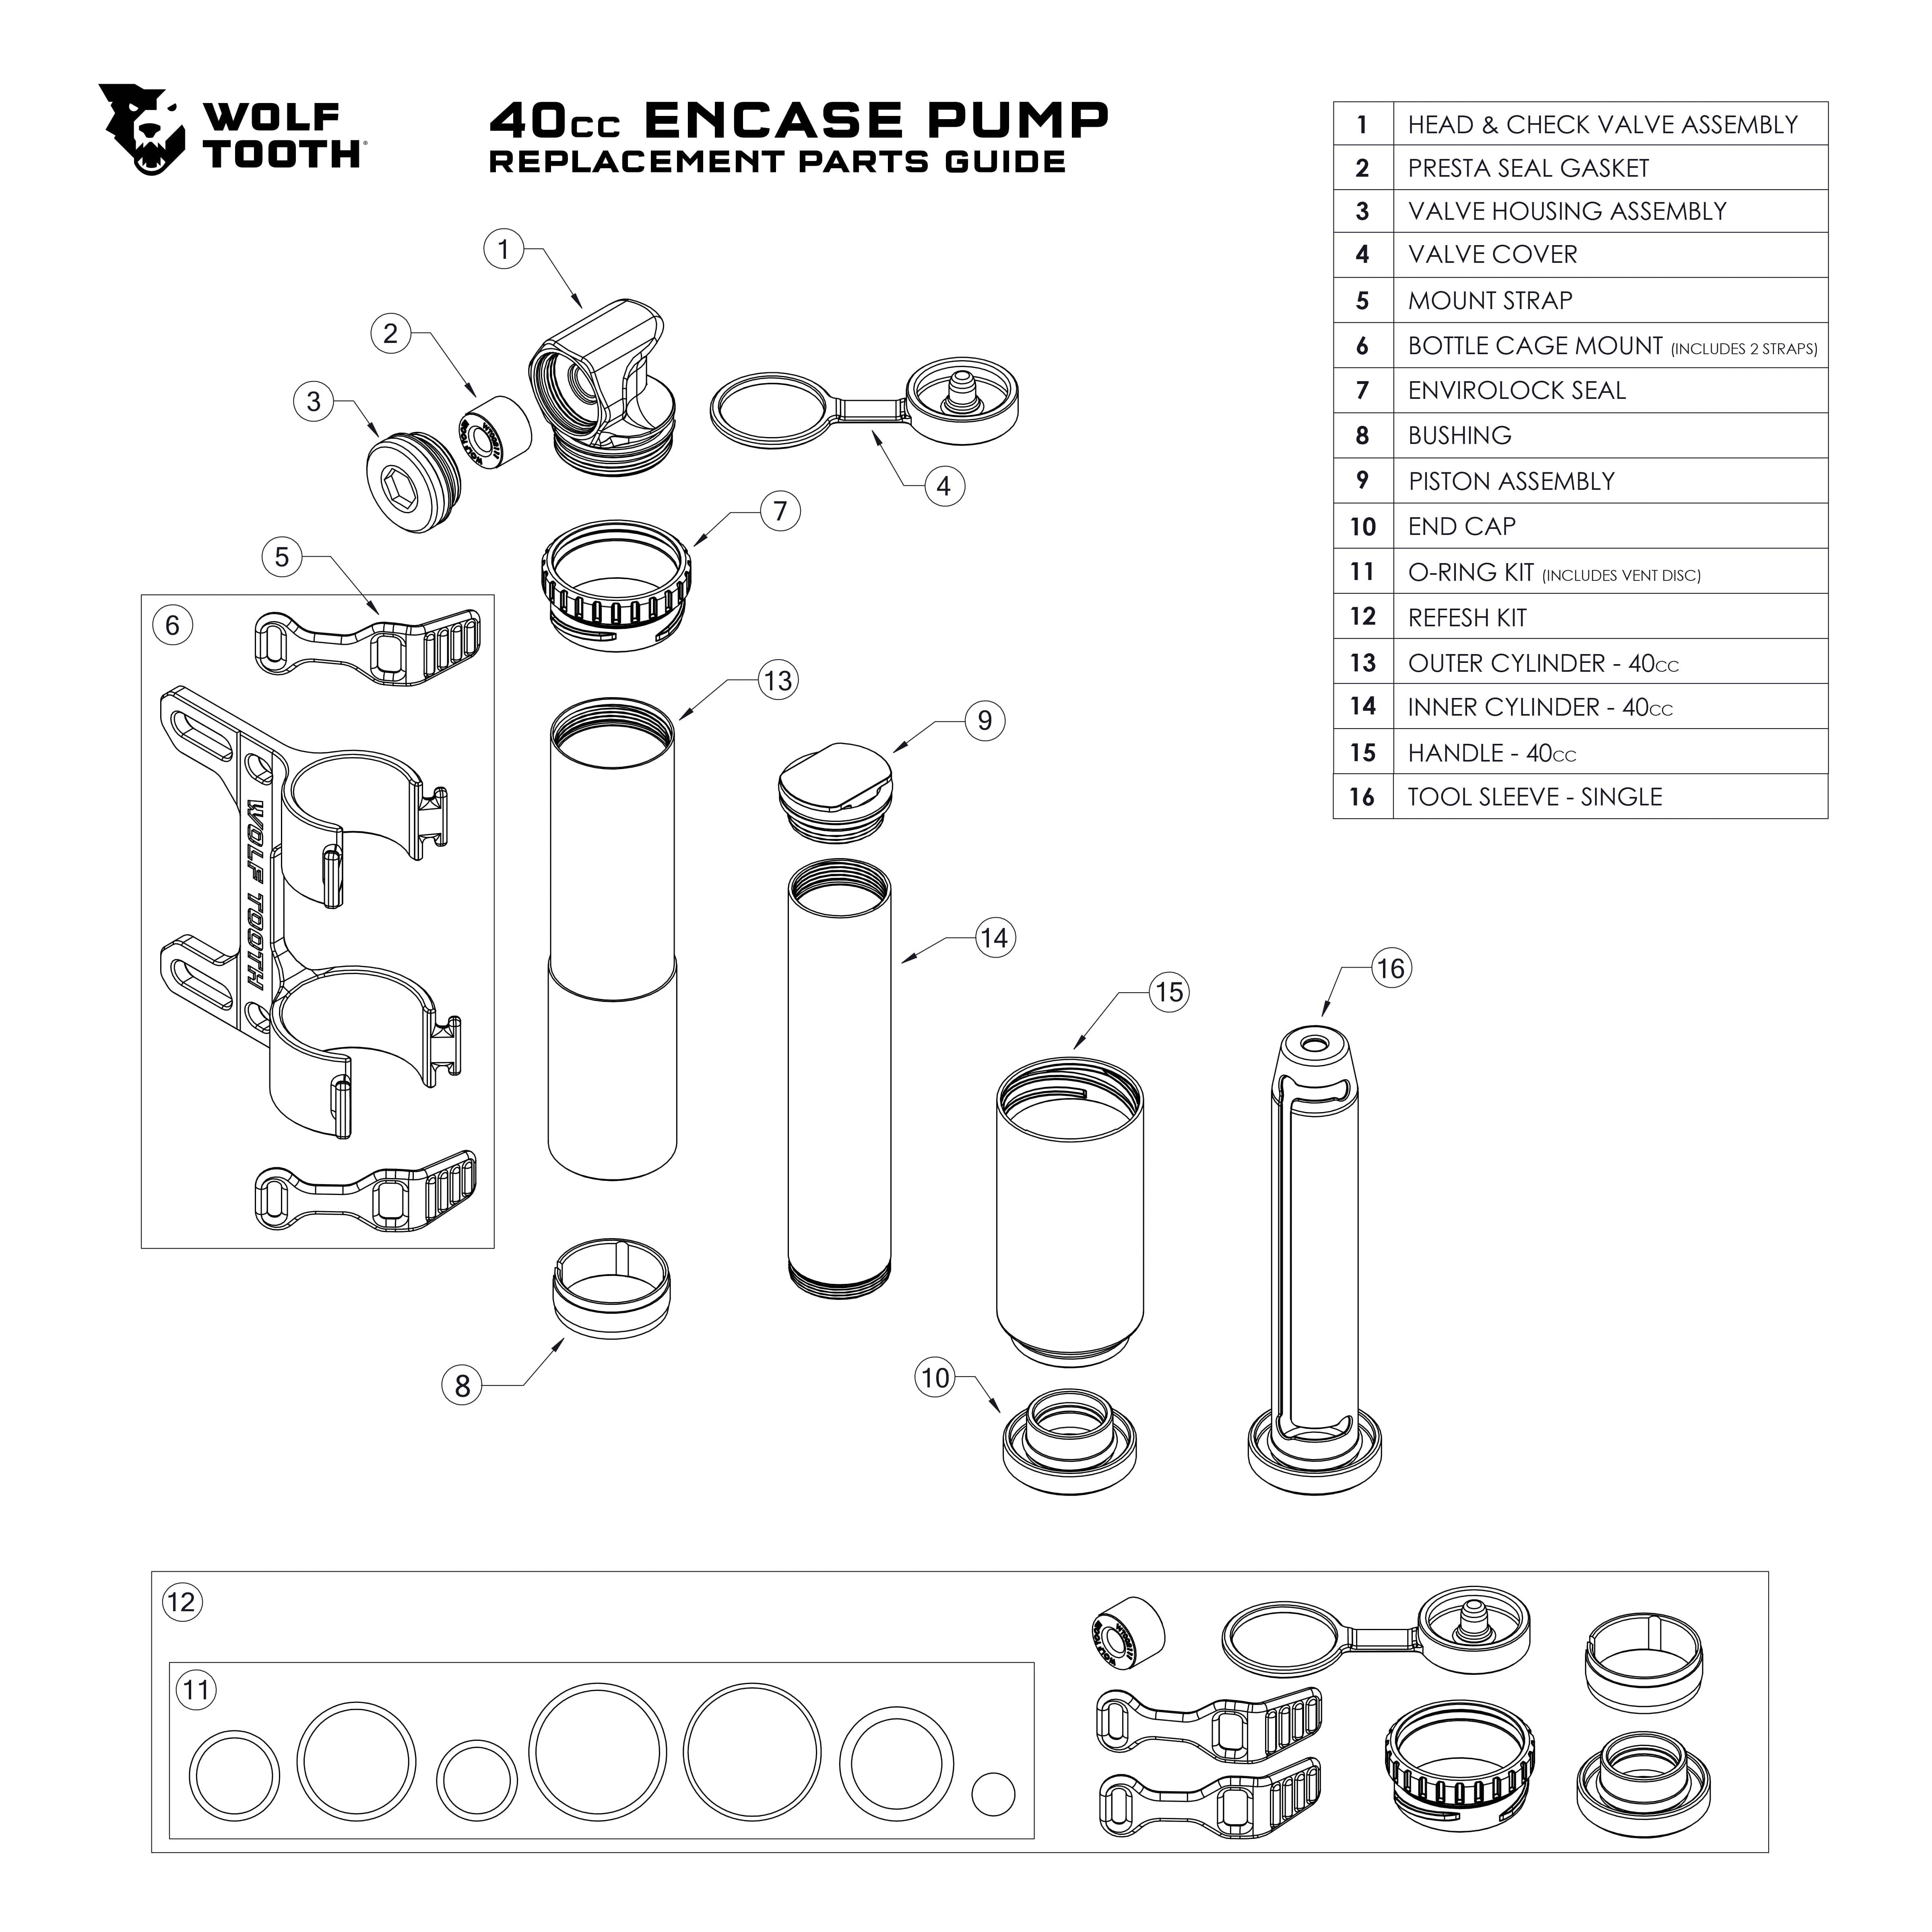 EnCase Pump Replacement Parts